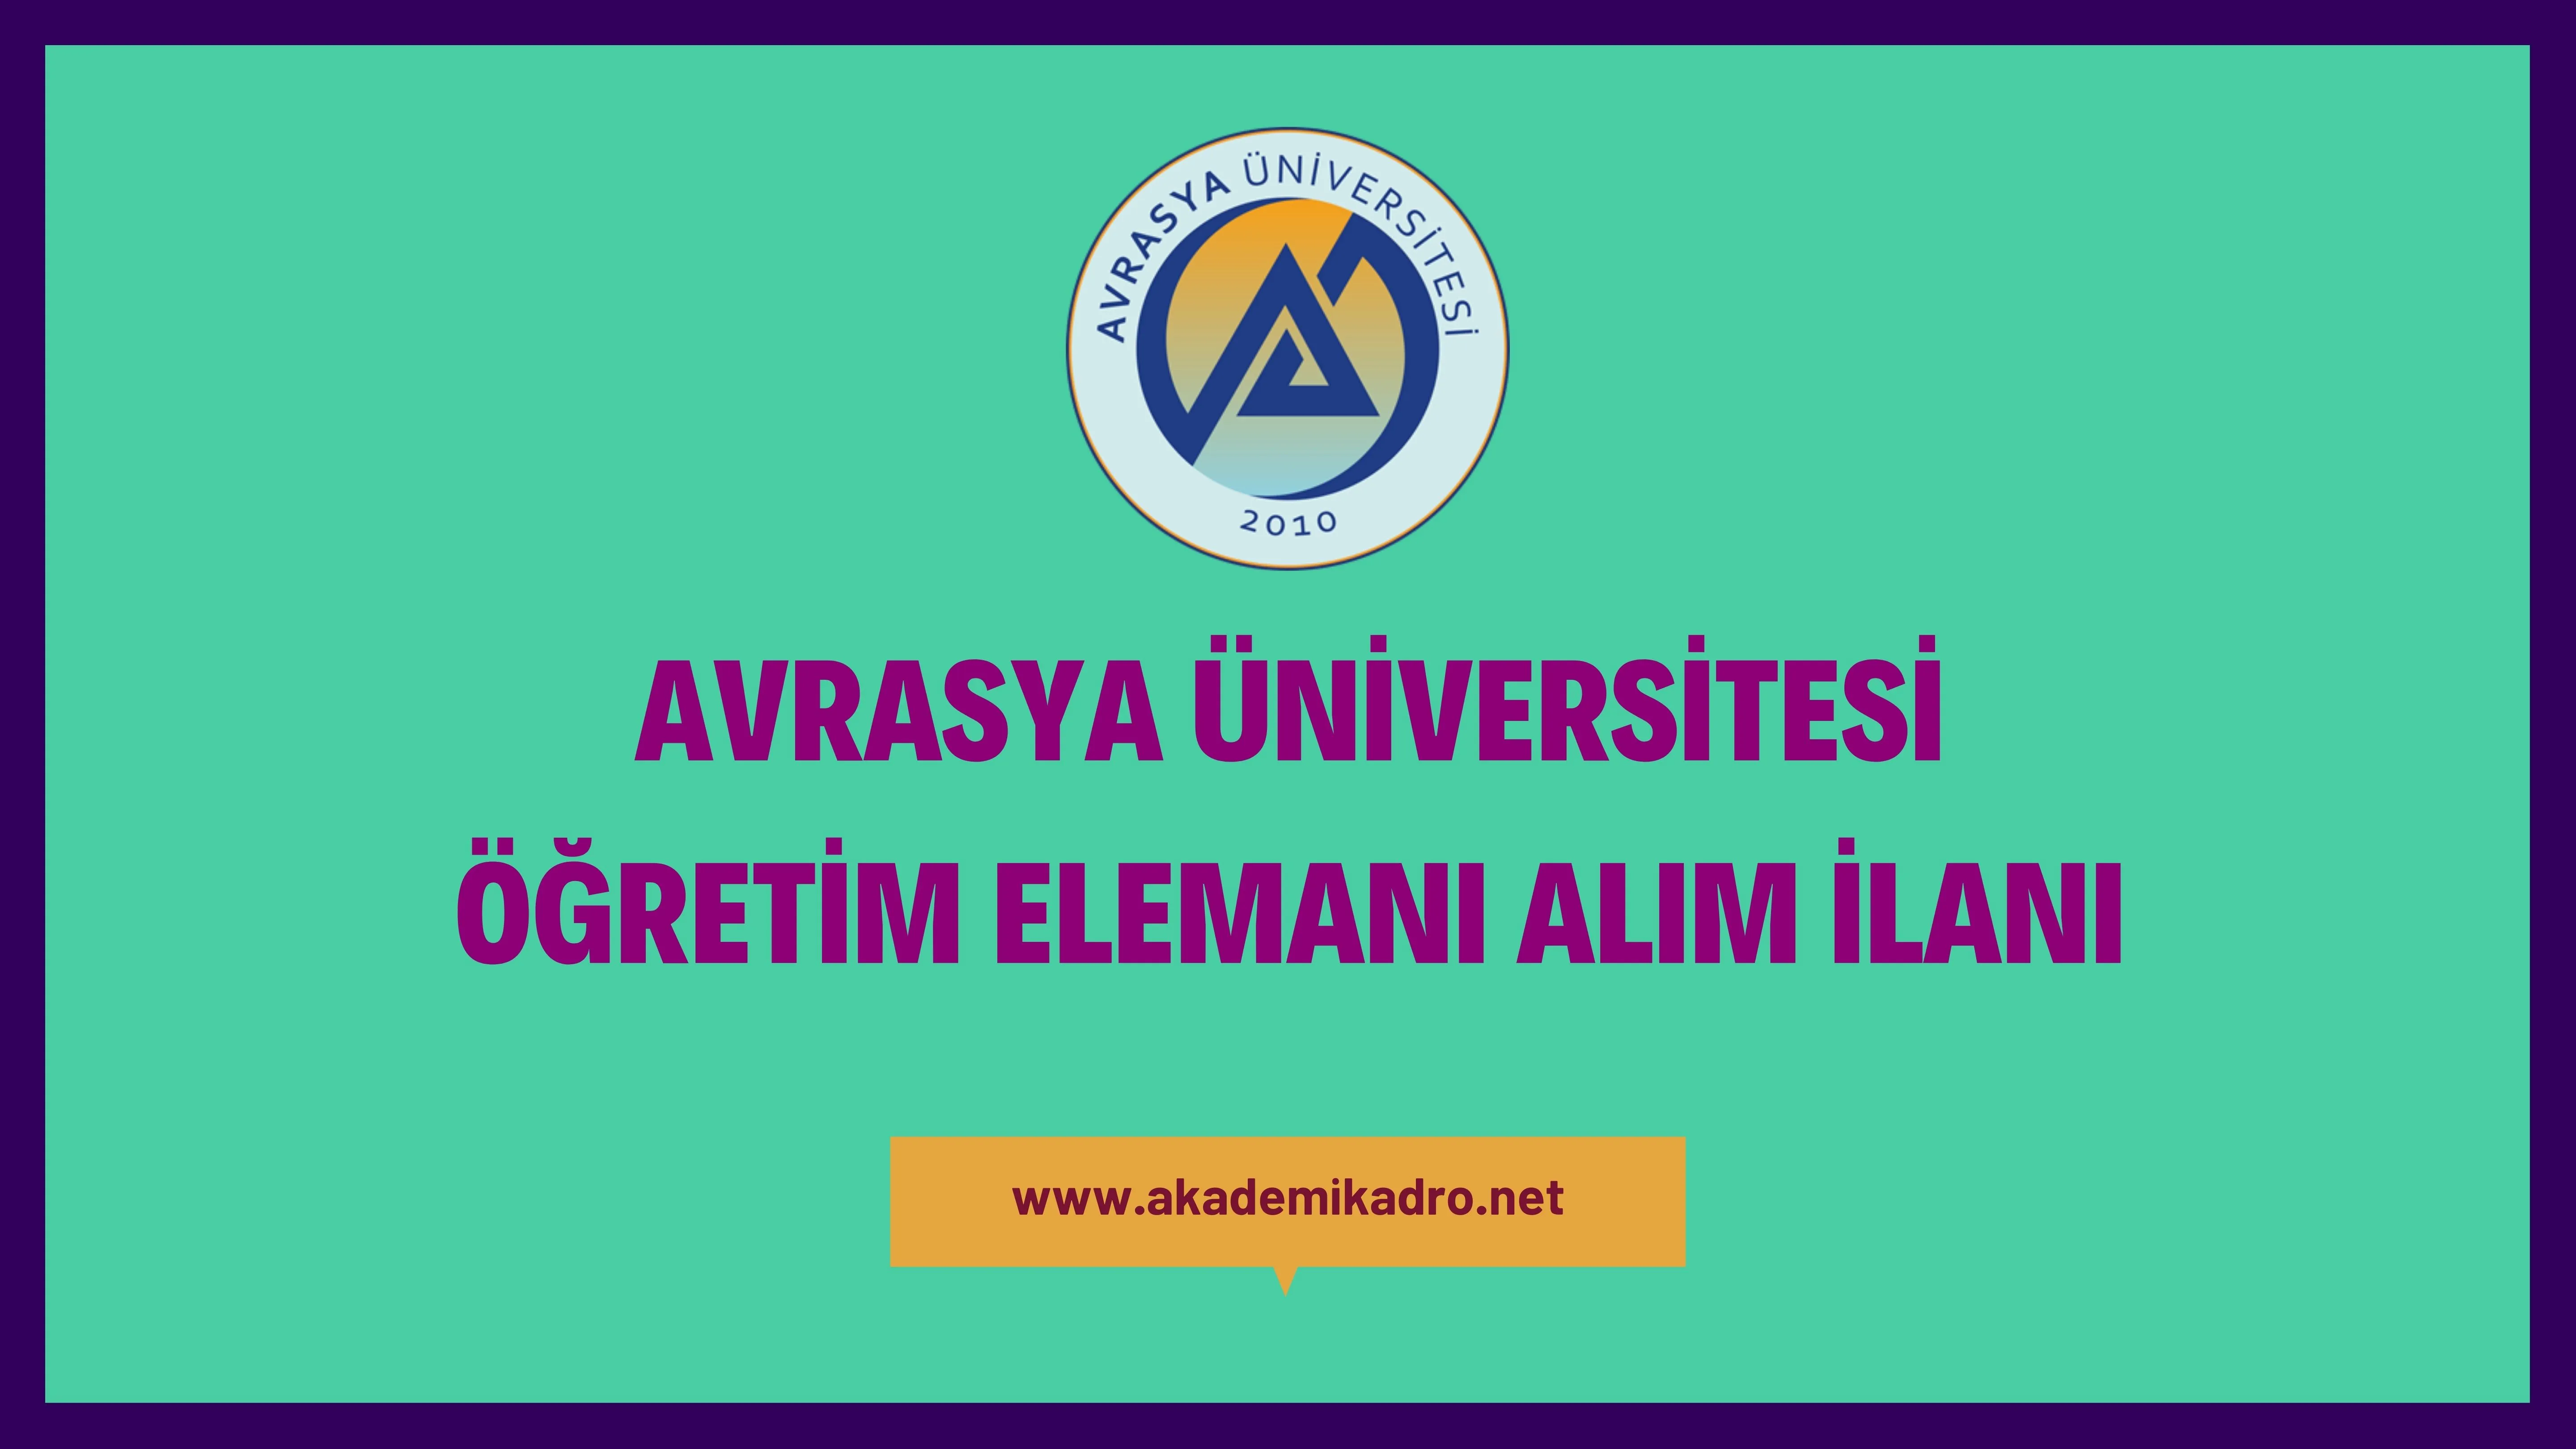 Avrasya Üniversitesi 62 Öğretim görevlisi, 6 Araştırma görevlisi ve 163 Öğretim üyesi alacak.